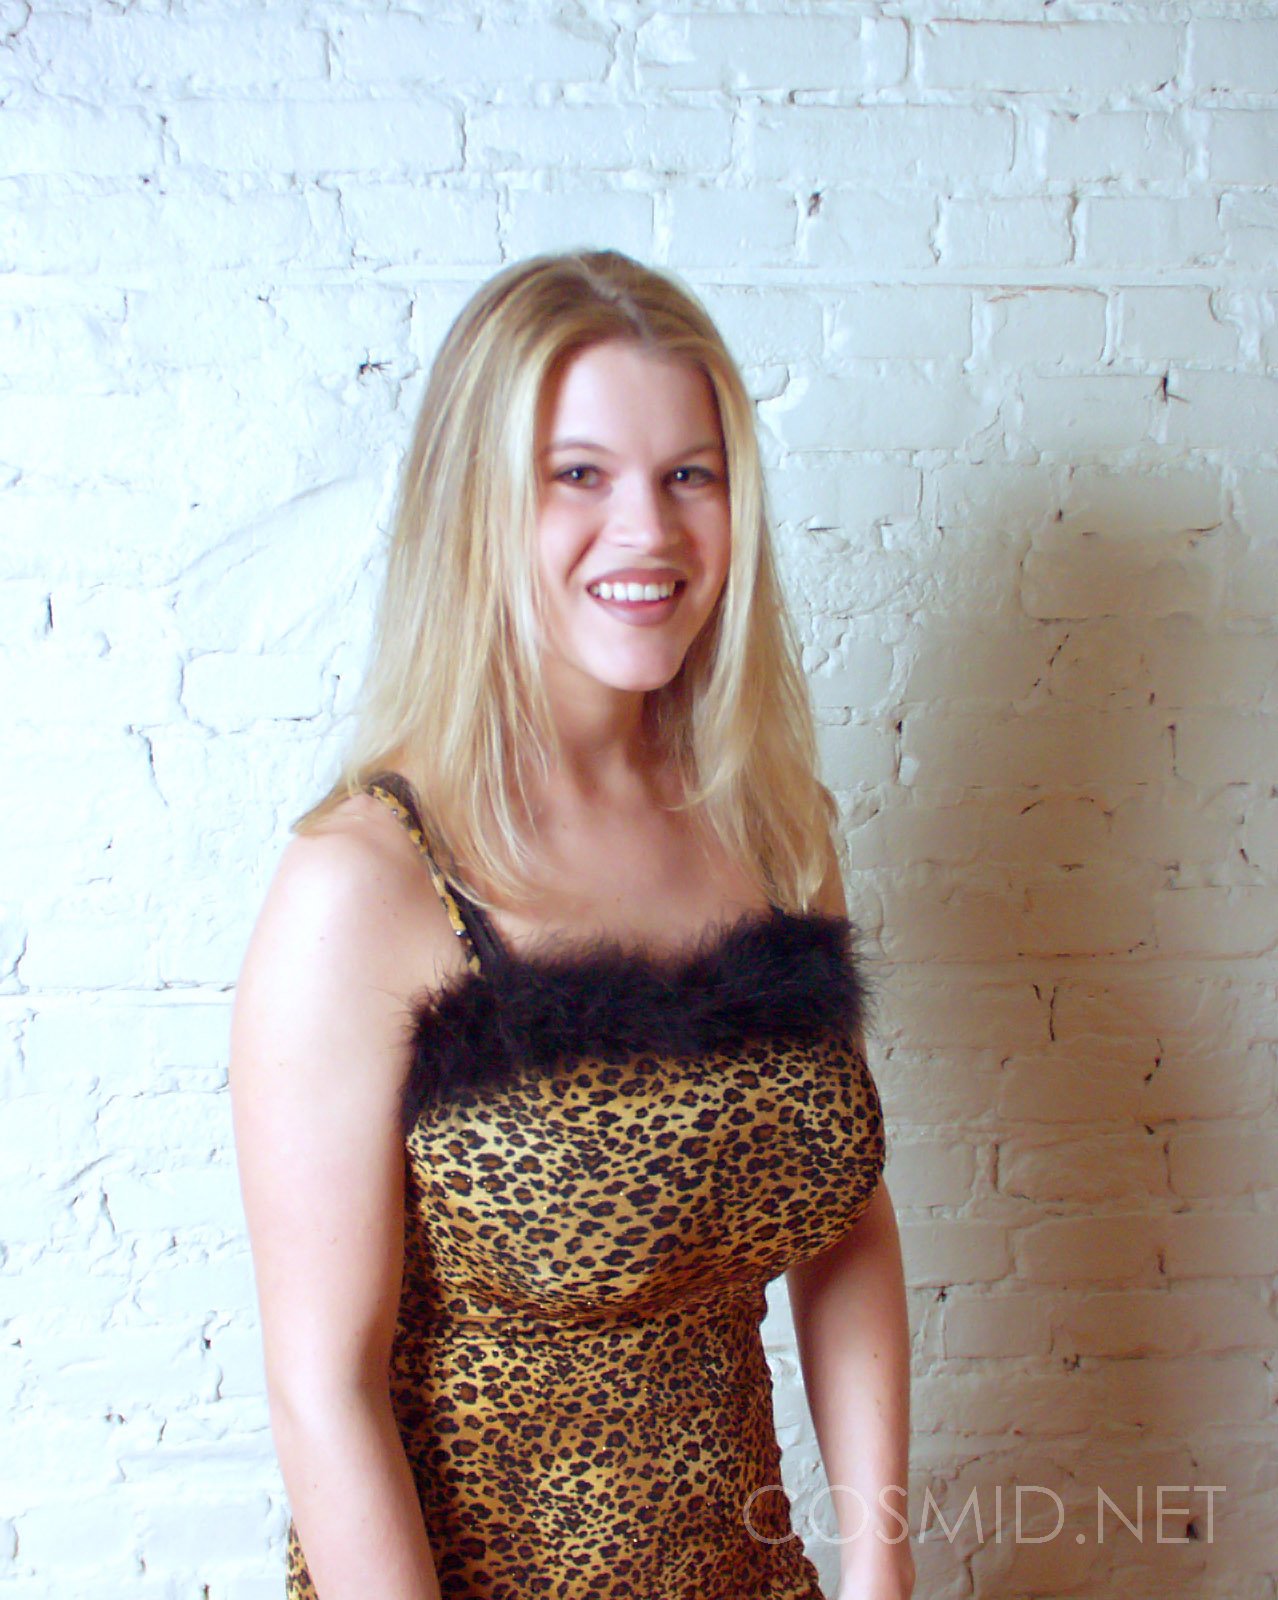 wpid-leopard-dress-tits5.jpg